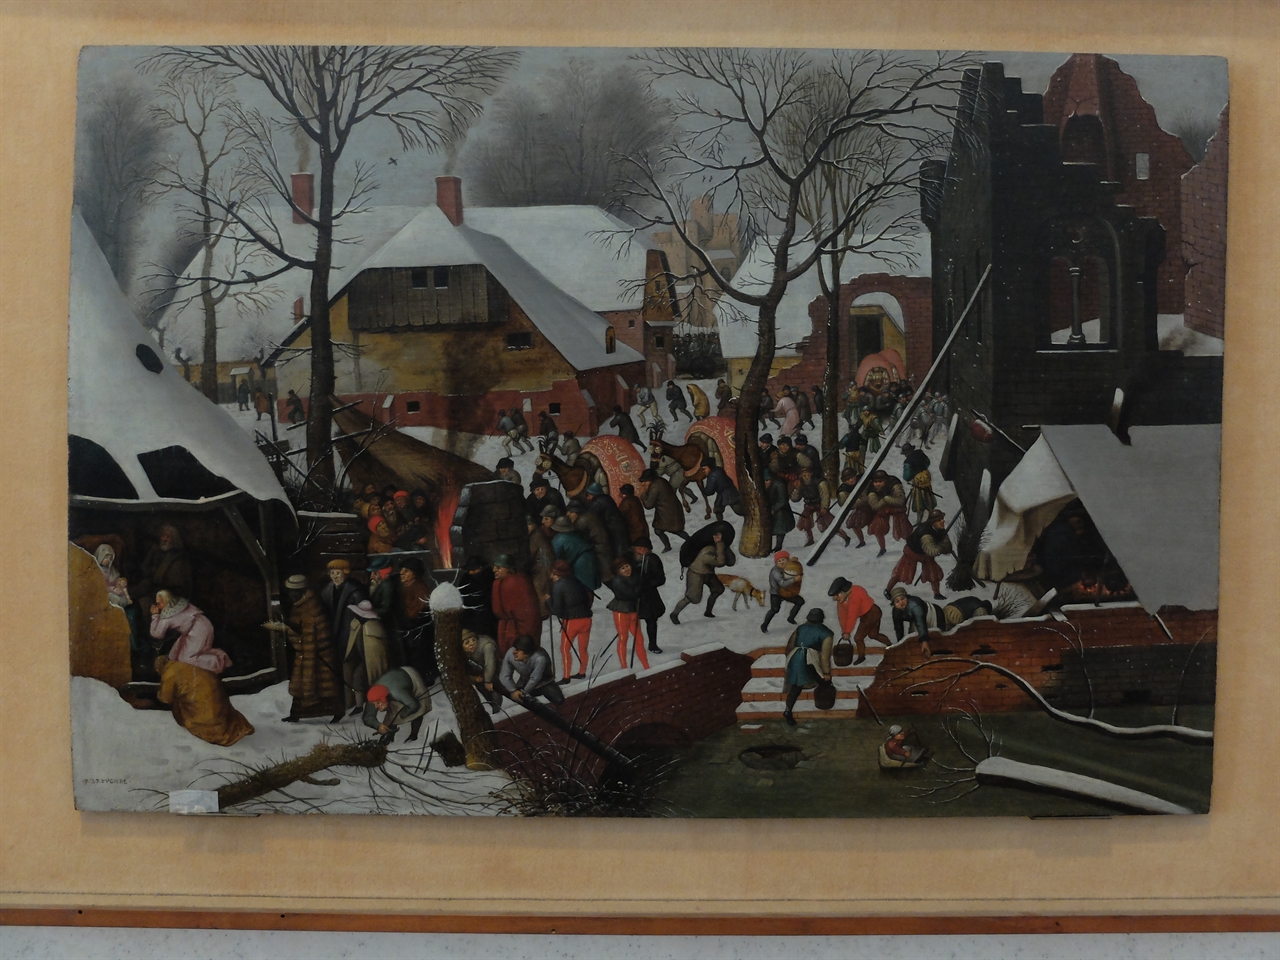 피터 브뤼겔 2세, ‘동방박사의 경배’, 베네치아 코레르 박물관. 북유럽 최고의 풍속화가 집안답게 동방박사의 경배를 겨울 풍경으로 묘사해 놓았습니다. 